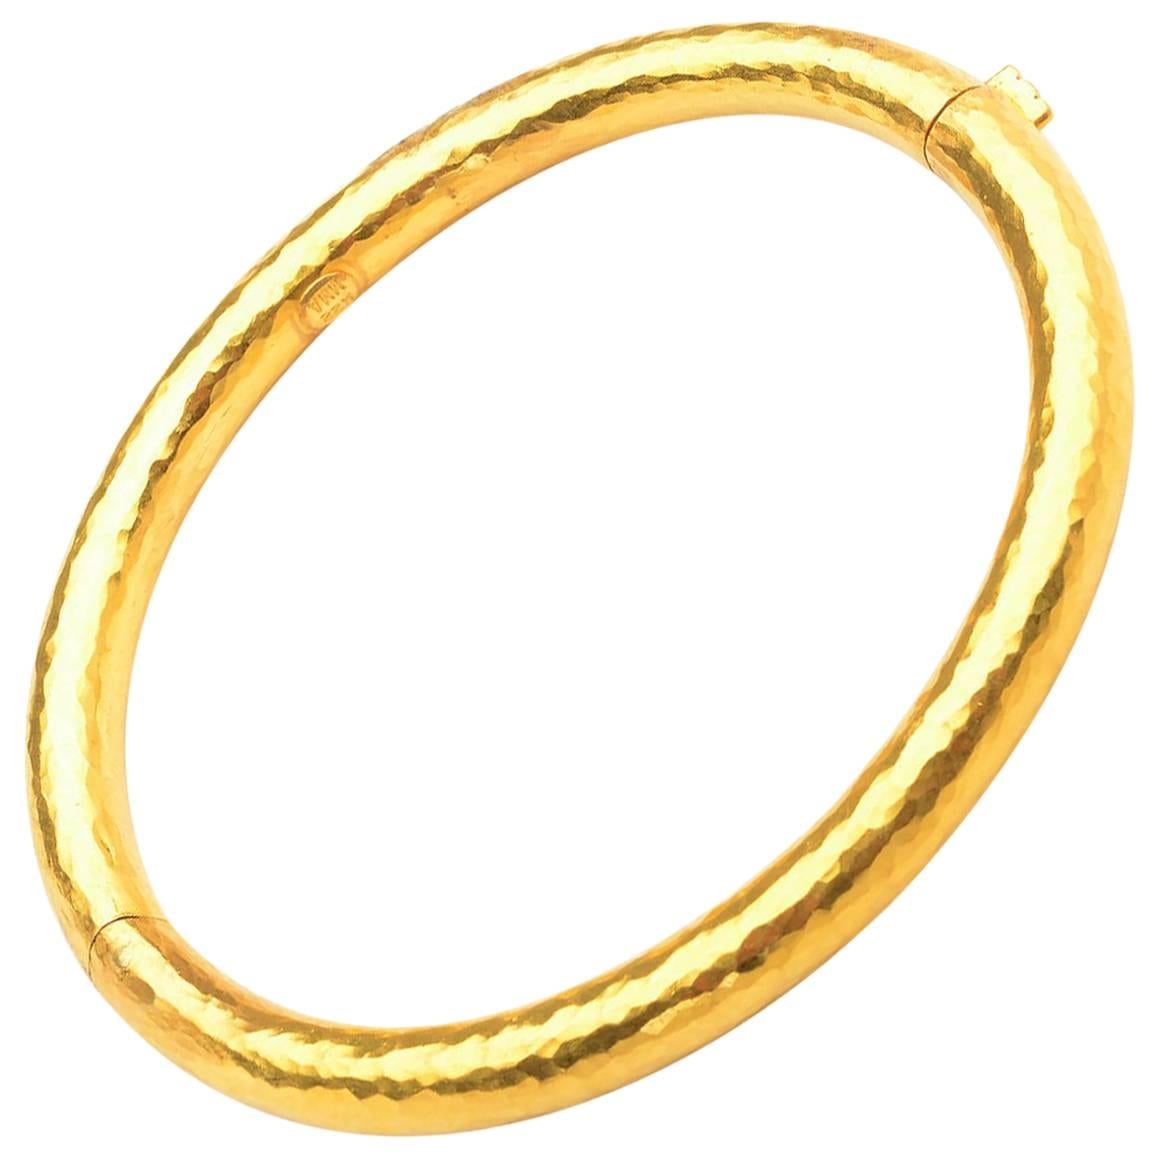 Hammered Gold Bangle Bracelet with Hinge